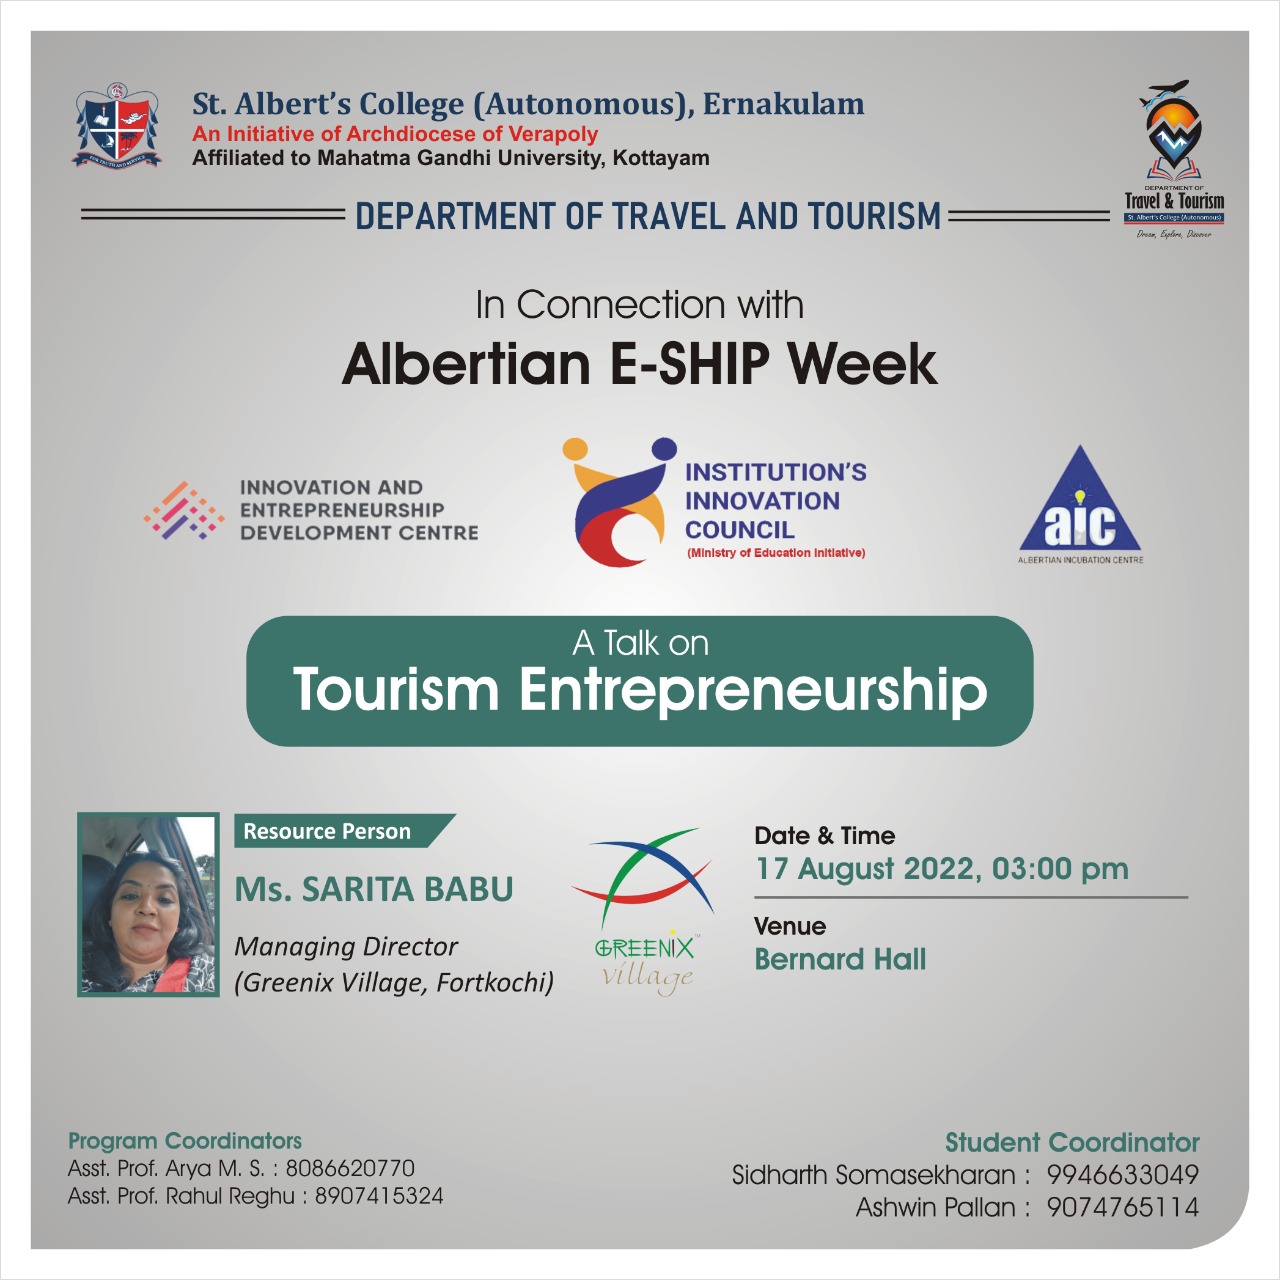 A Talk on Tourism Entrepreneurship